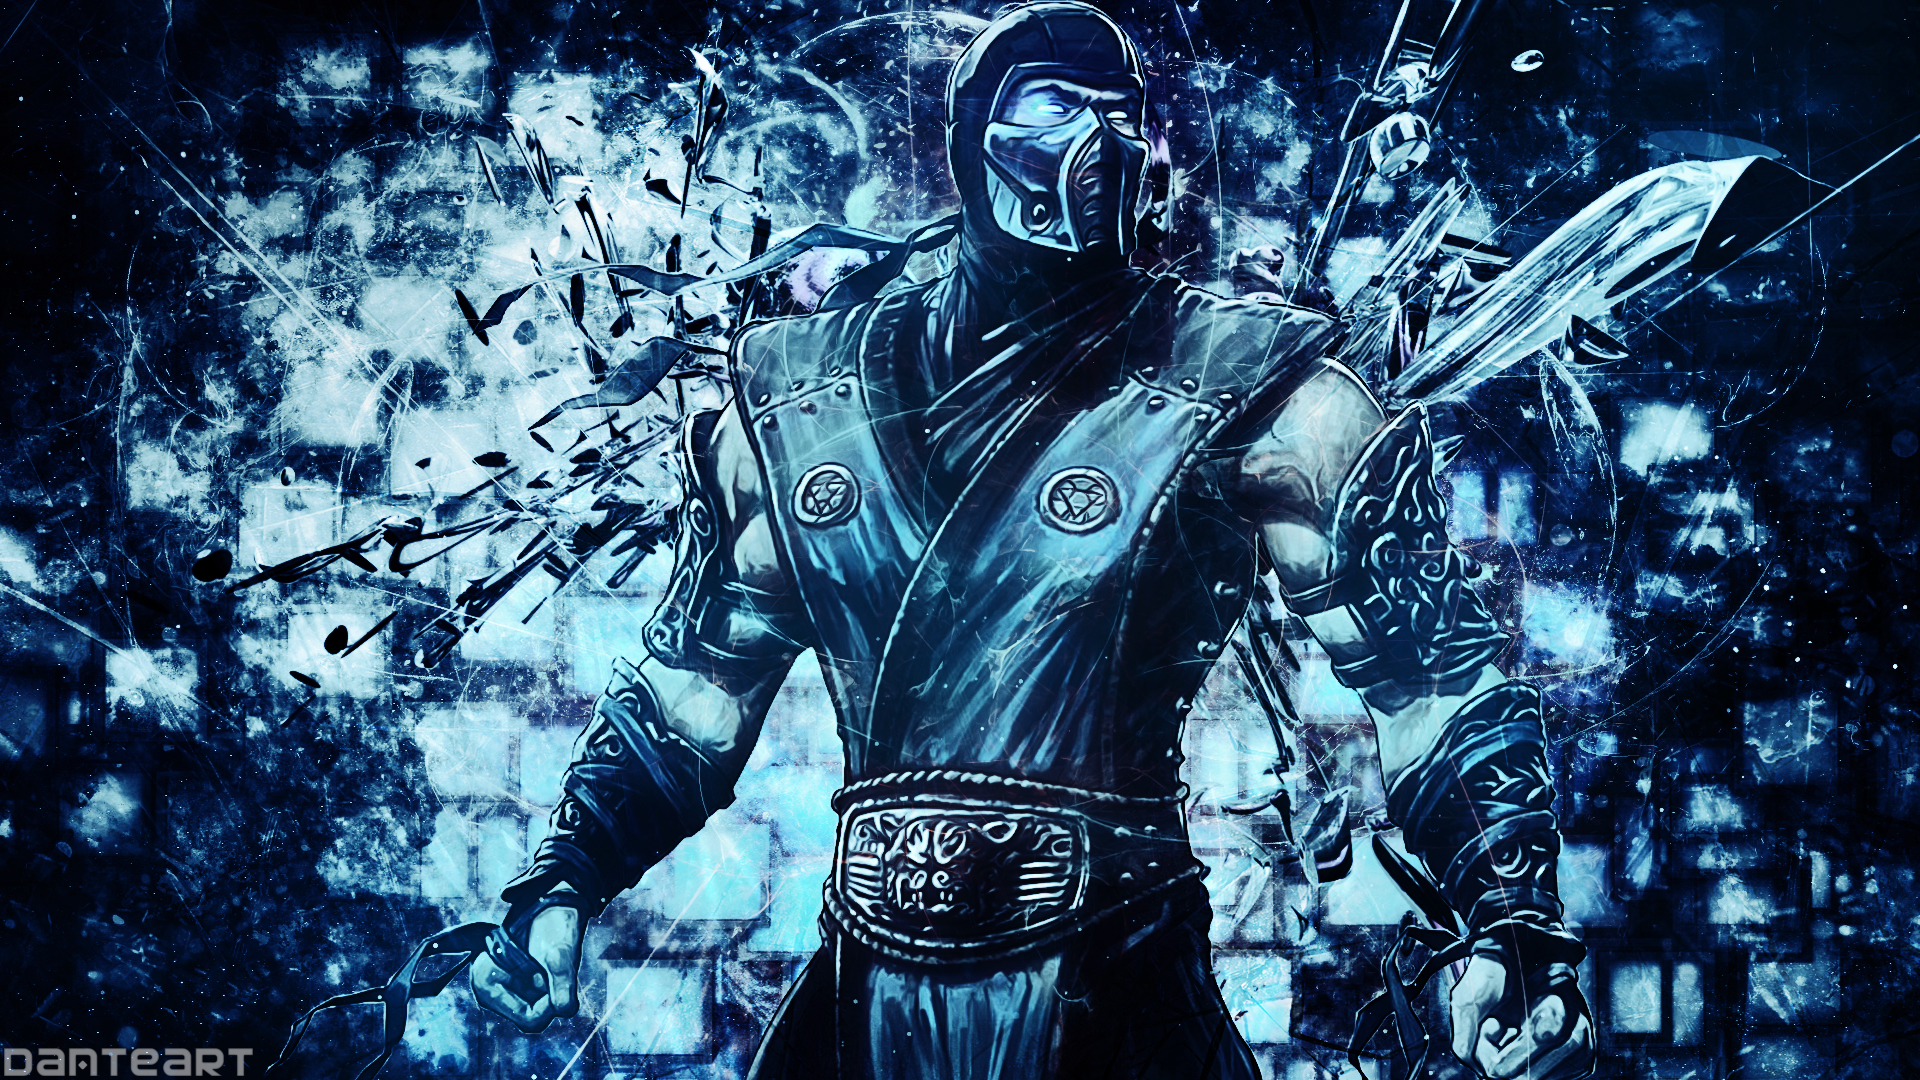 Mortal Kombat Sub Zero Wallpaper by DanteArtWallpapers on